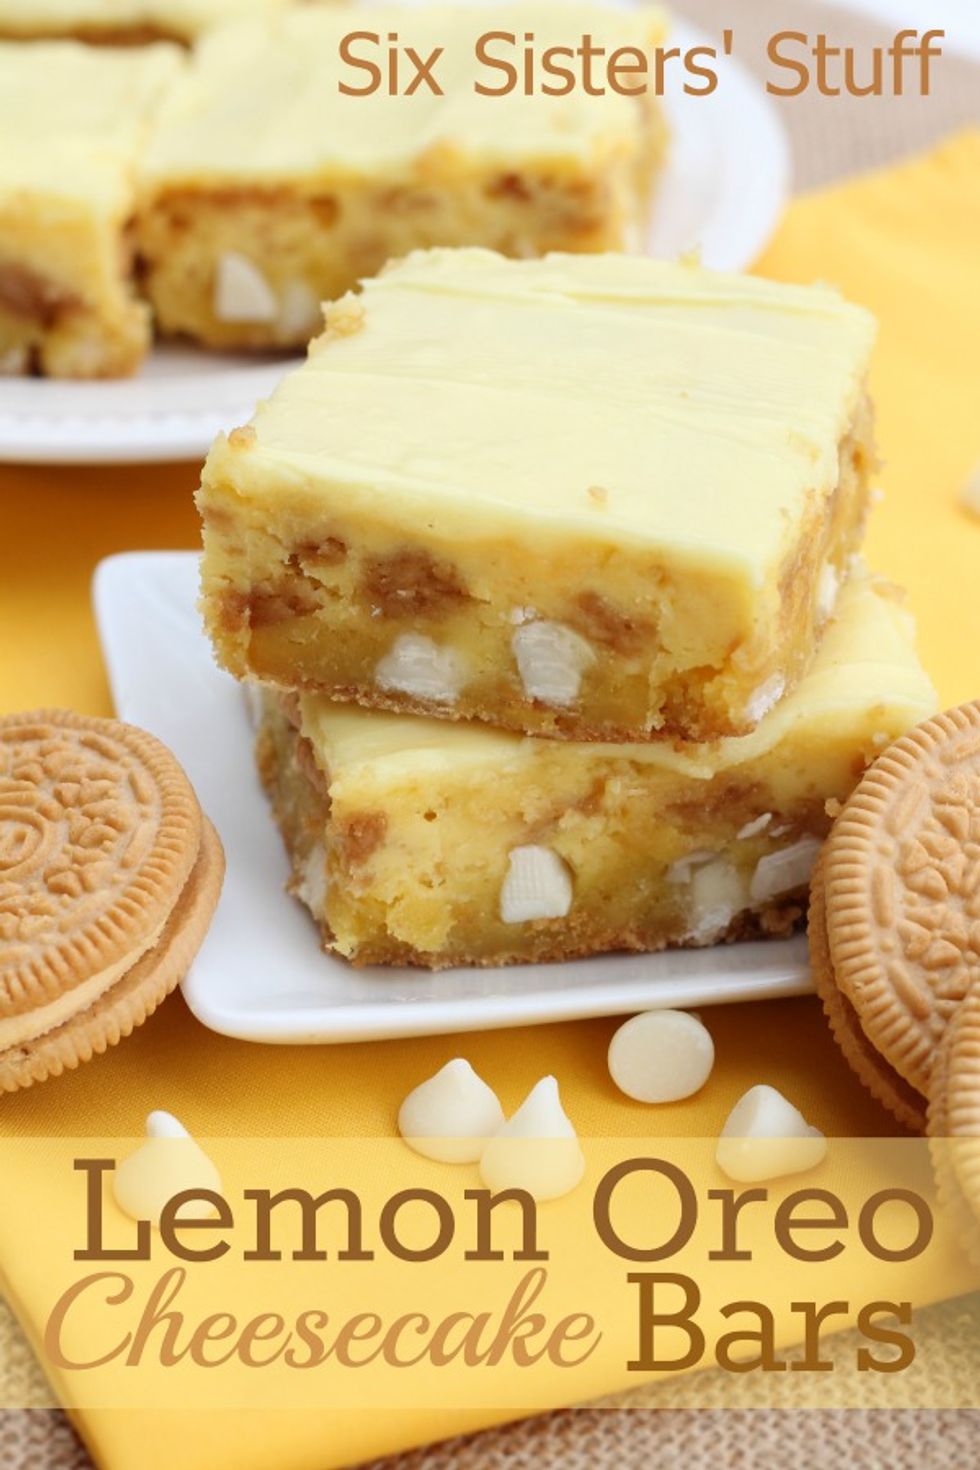 Lemon Cake Recipe Duncan Hines